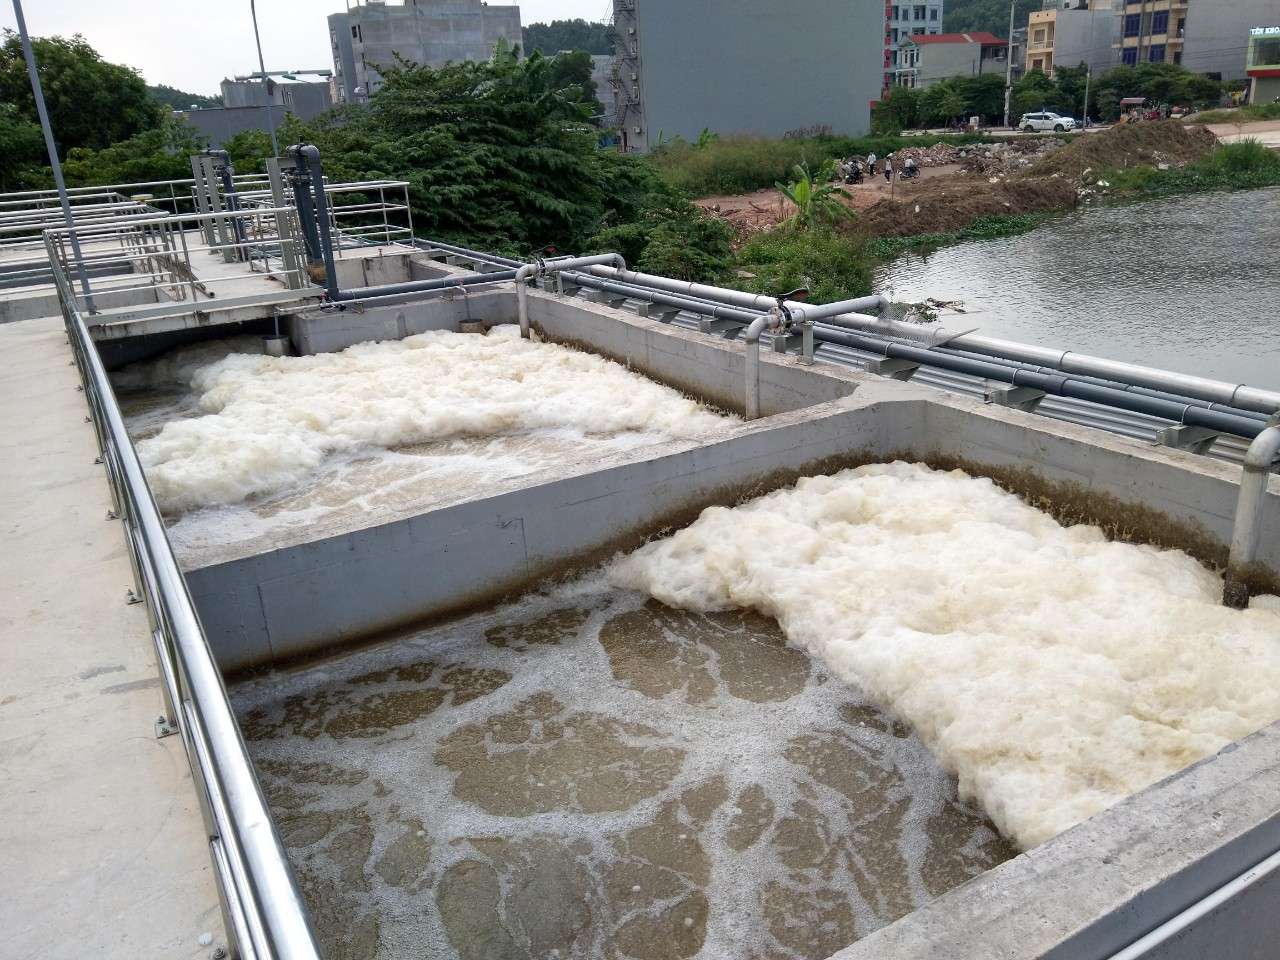 Top 5 công ty xử lý nước thải tại Hà Nội